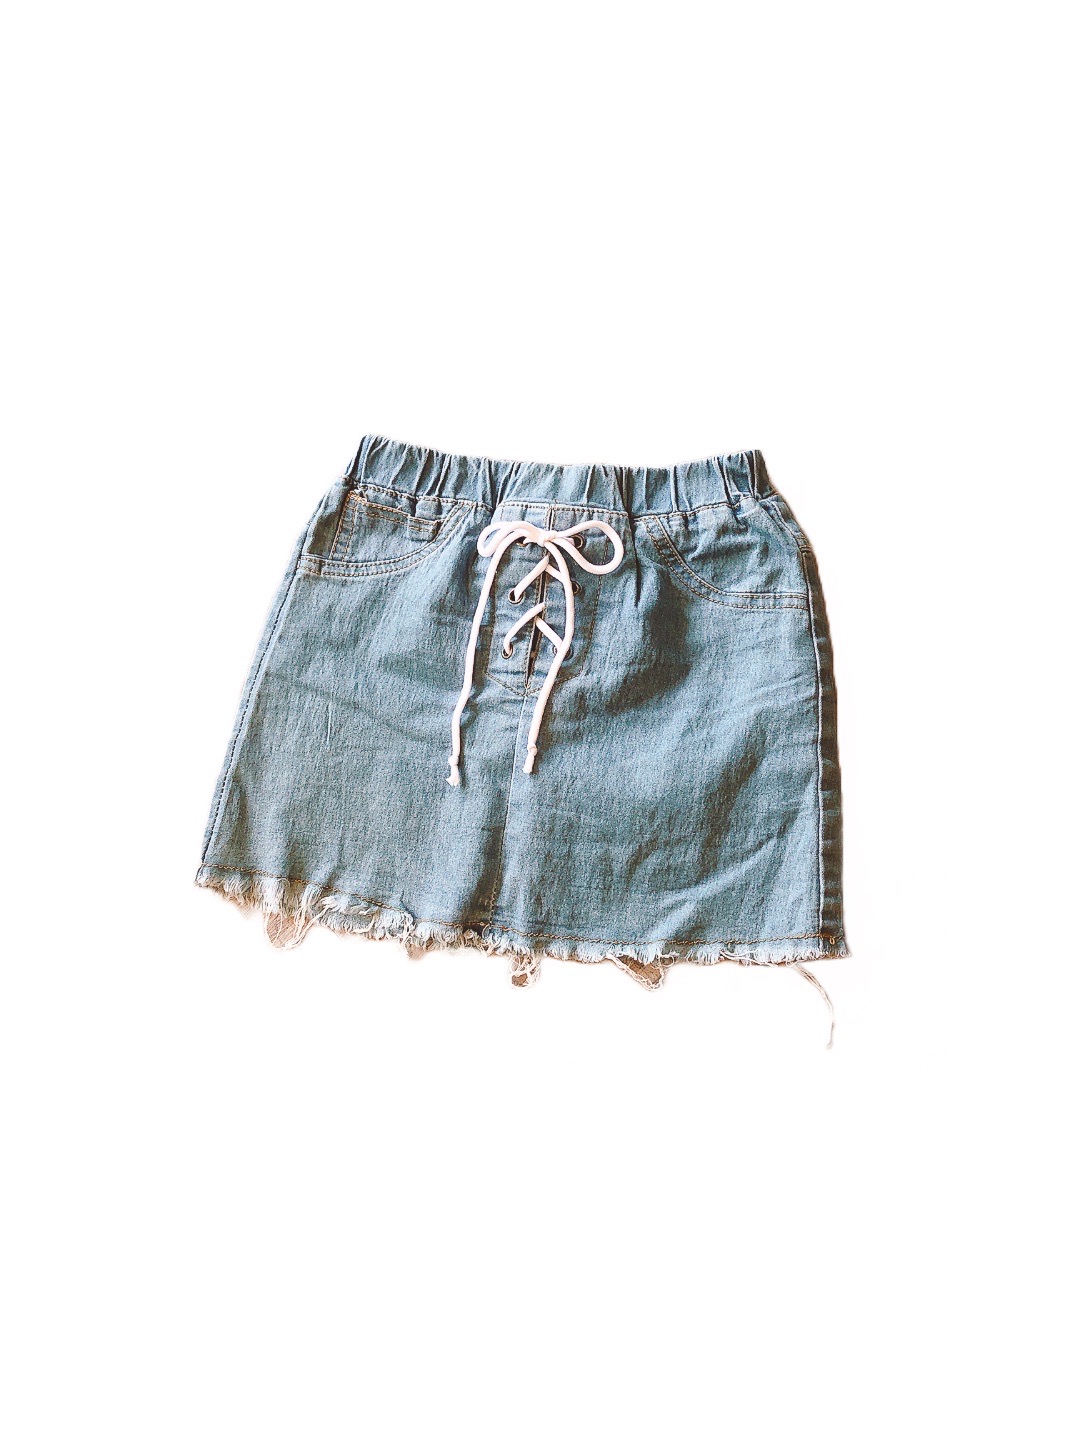 藍色牛仔女童短裙(13)
NT$39